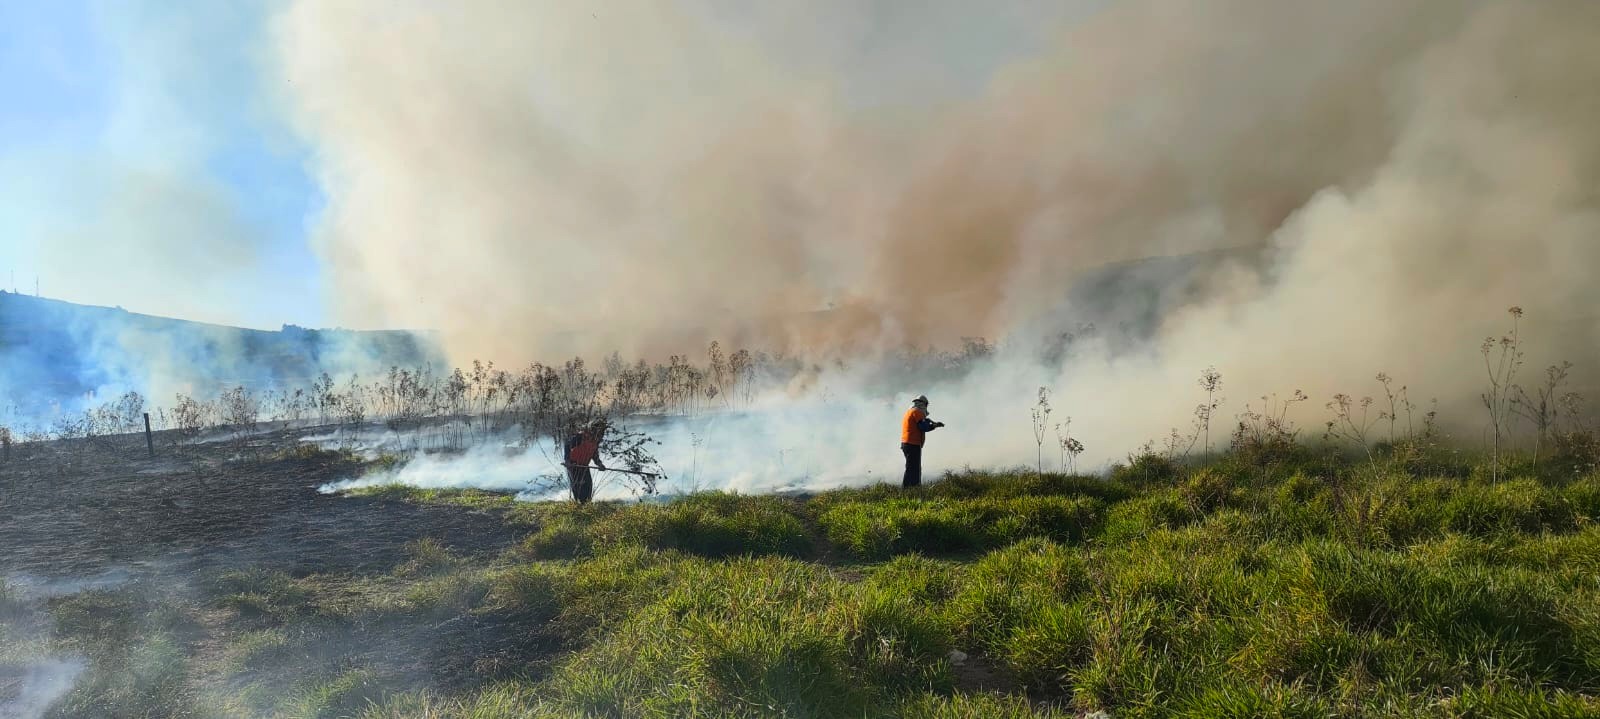 Incêndio atinge cerca de 27 hectares de área verde em Limeira